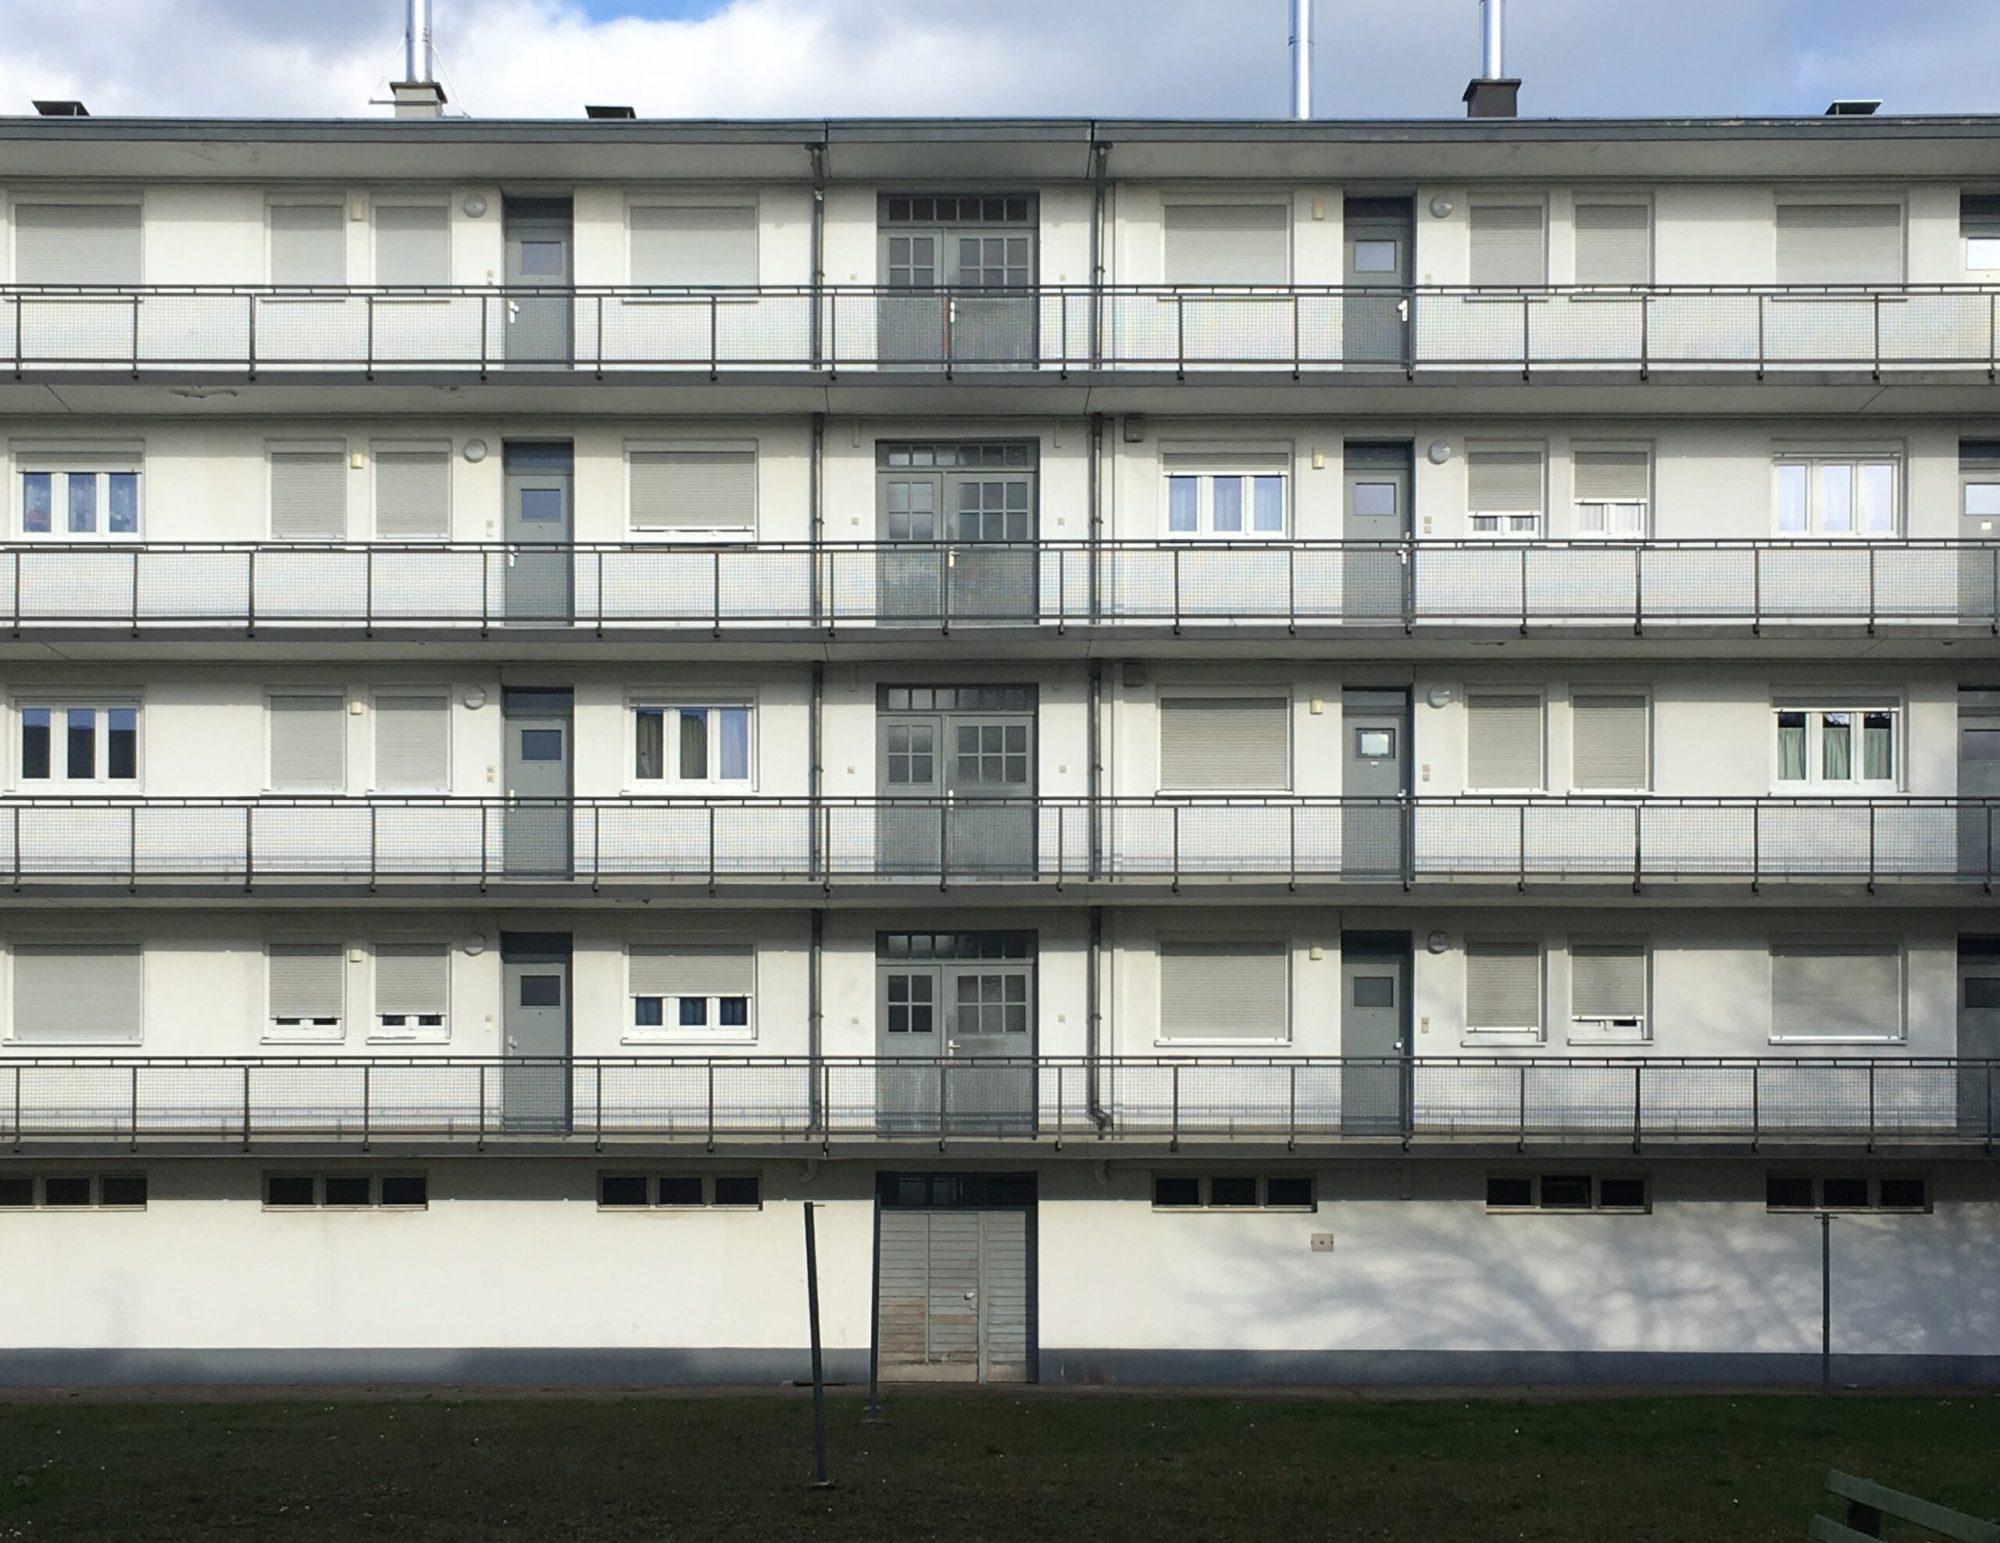 Mehrfamilienhaus. Siedlung Dammerstock, 1928-1929. Architekt: Walter Gropius. Foto: Daniela Christmann